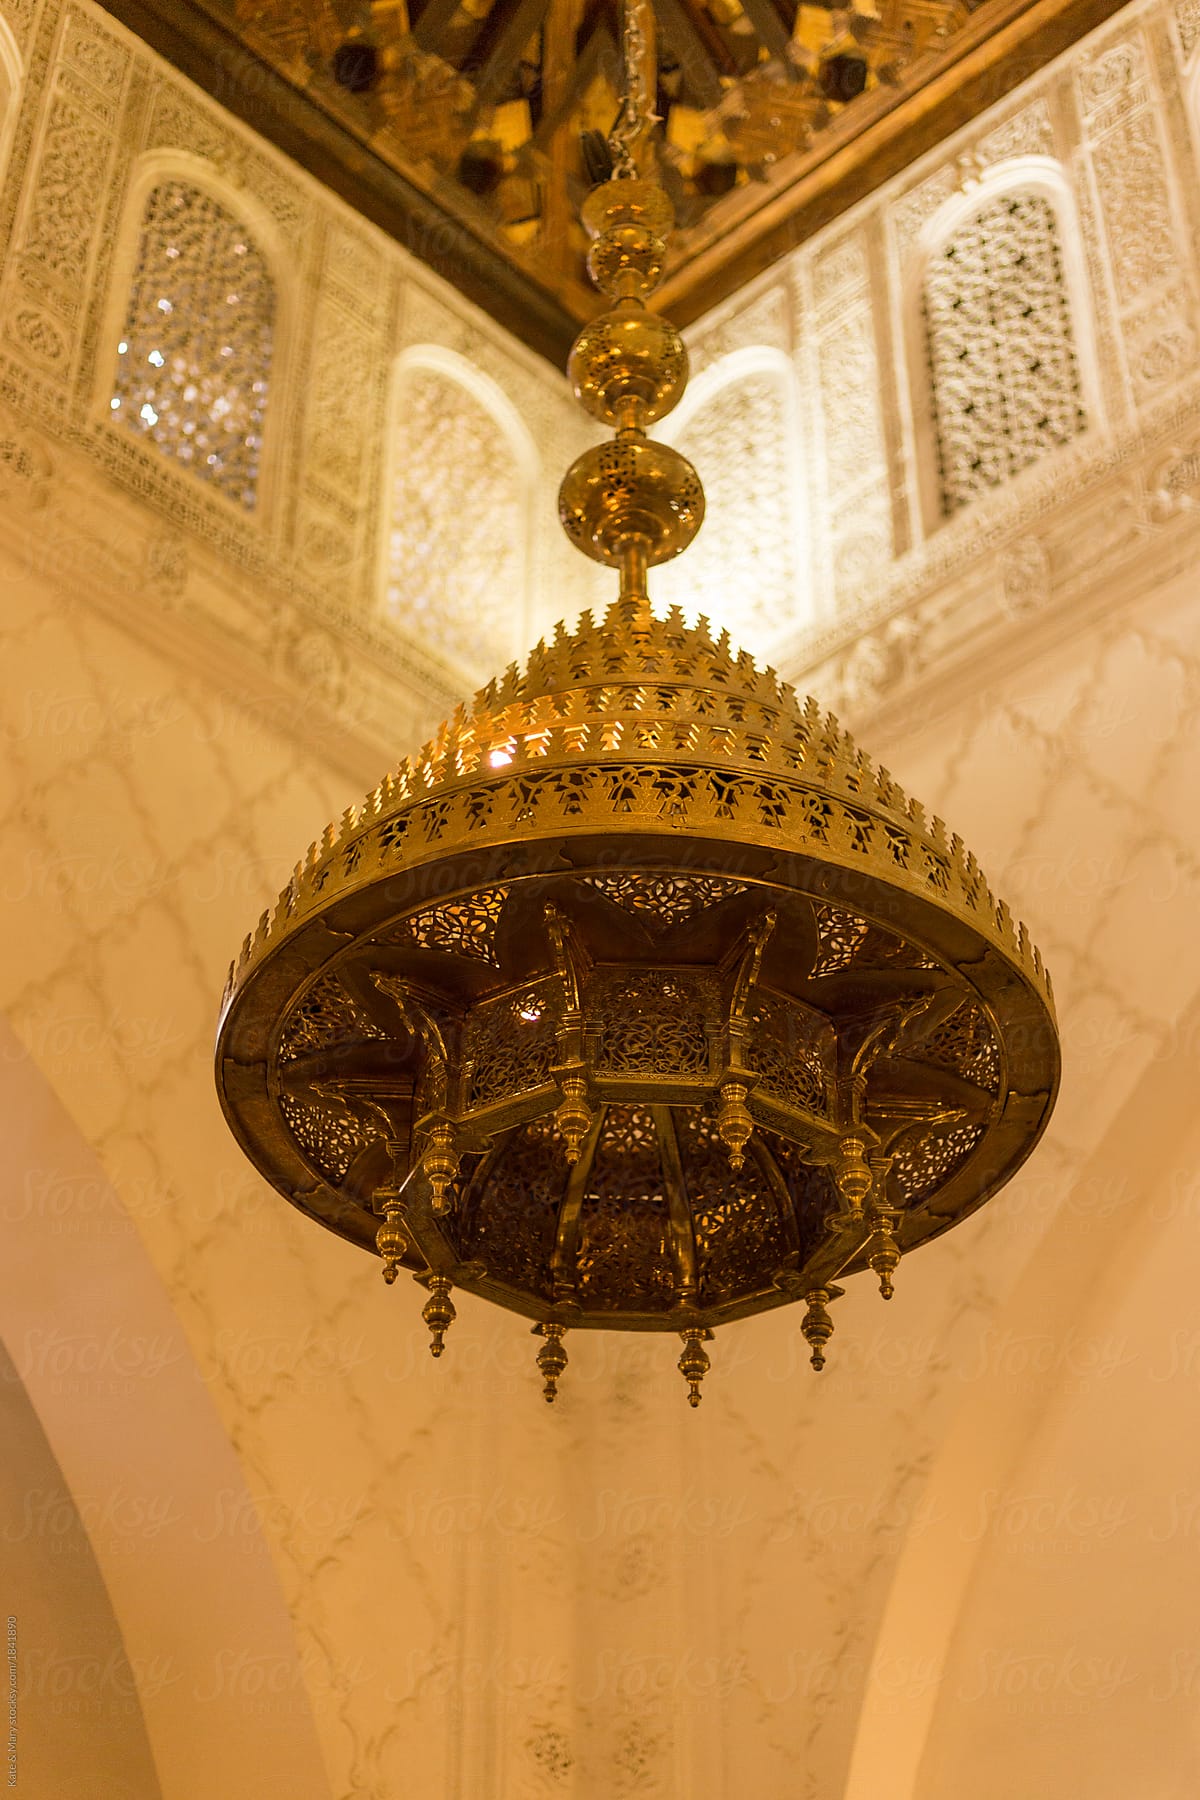 Chandelier inside of beautiful arabic palace